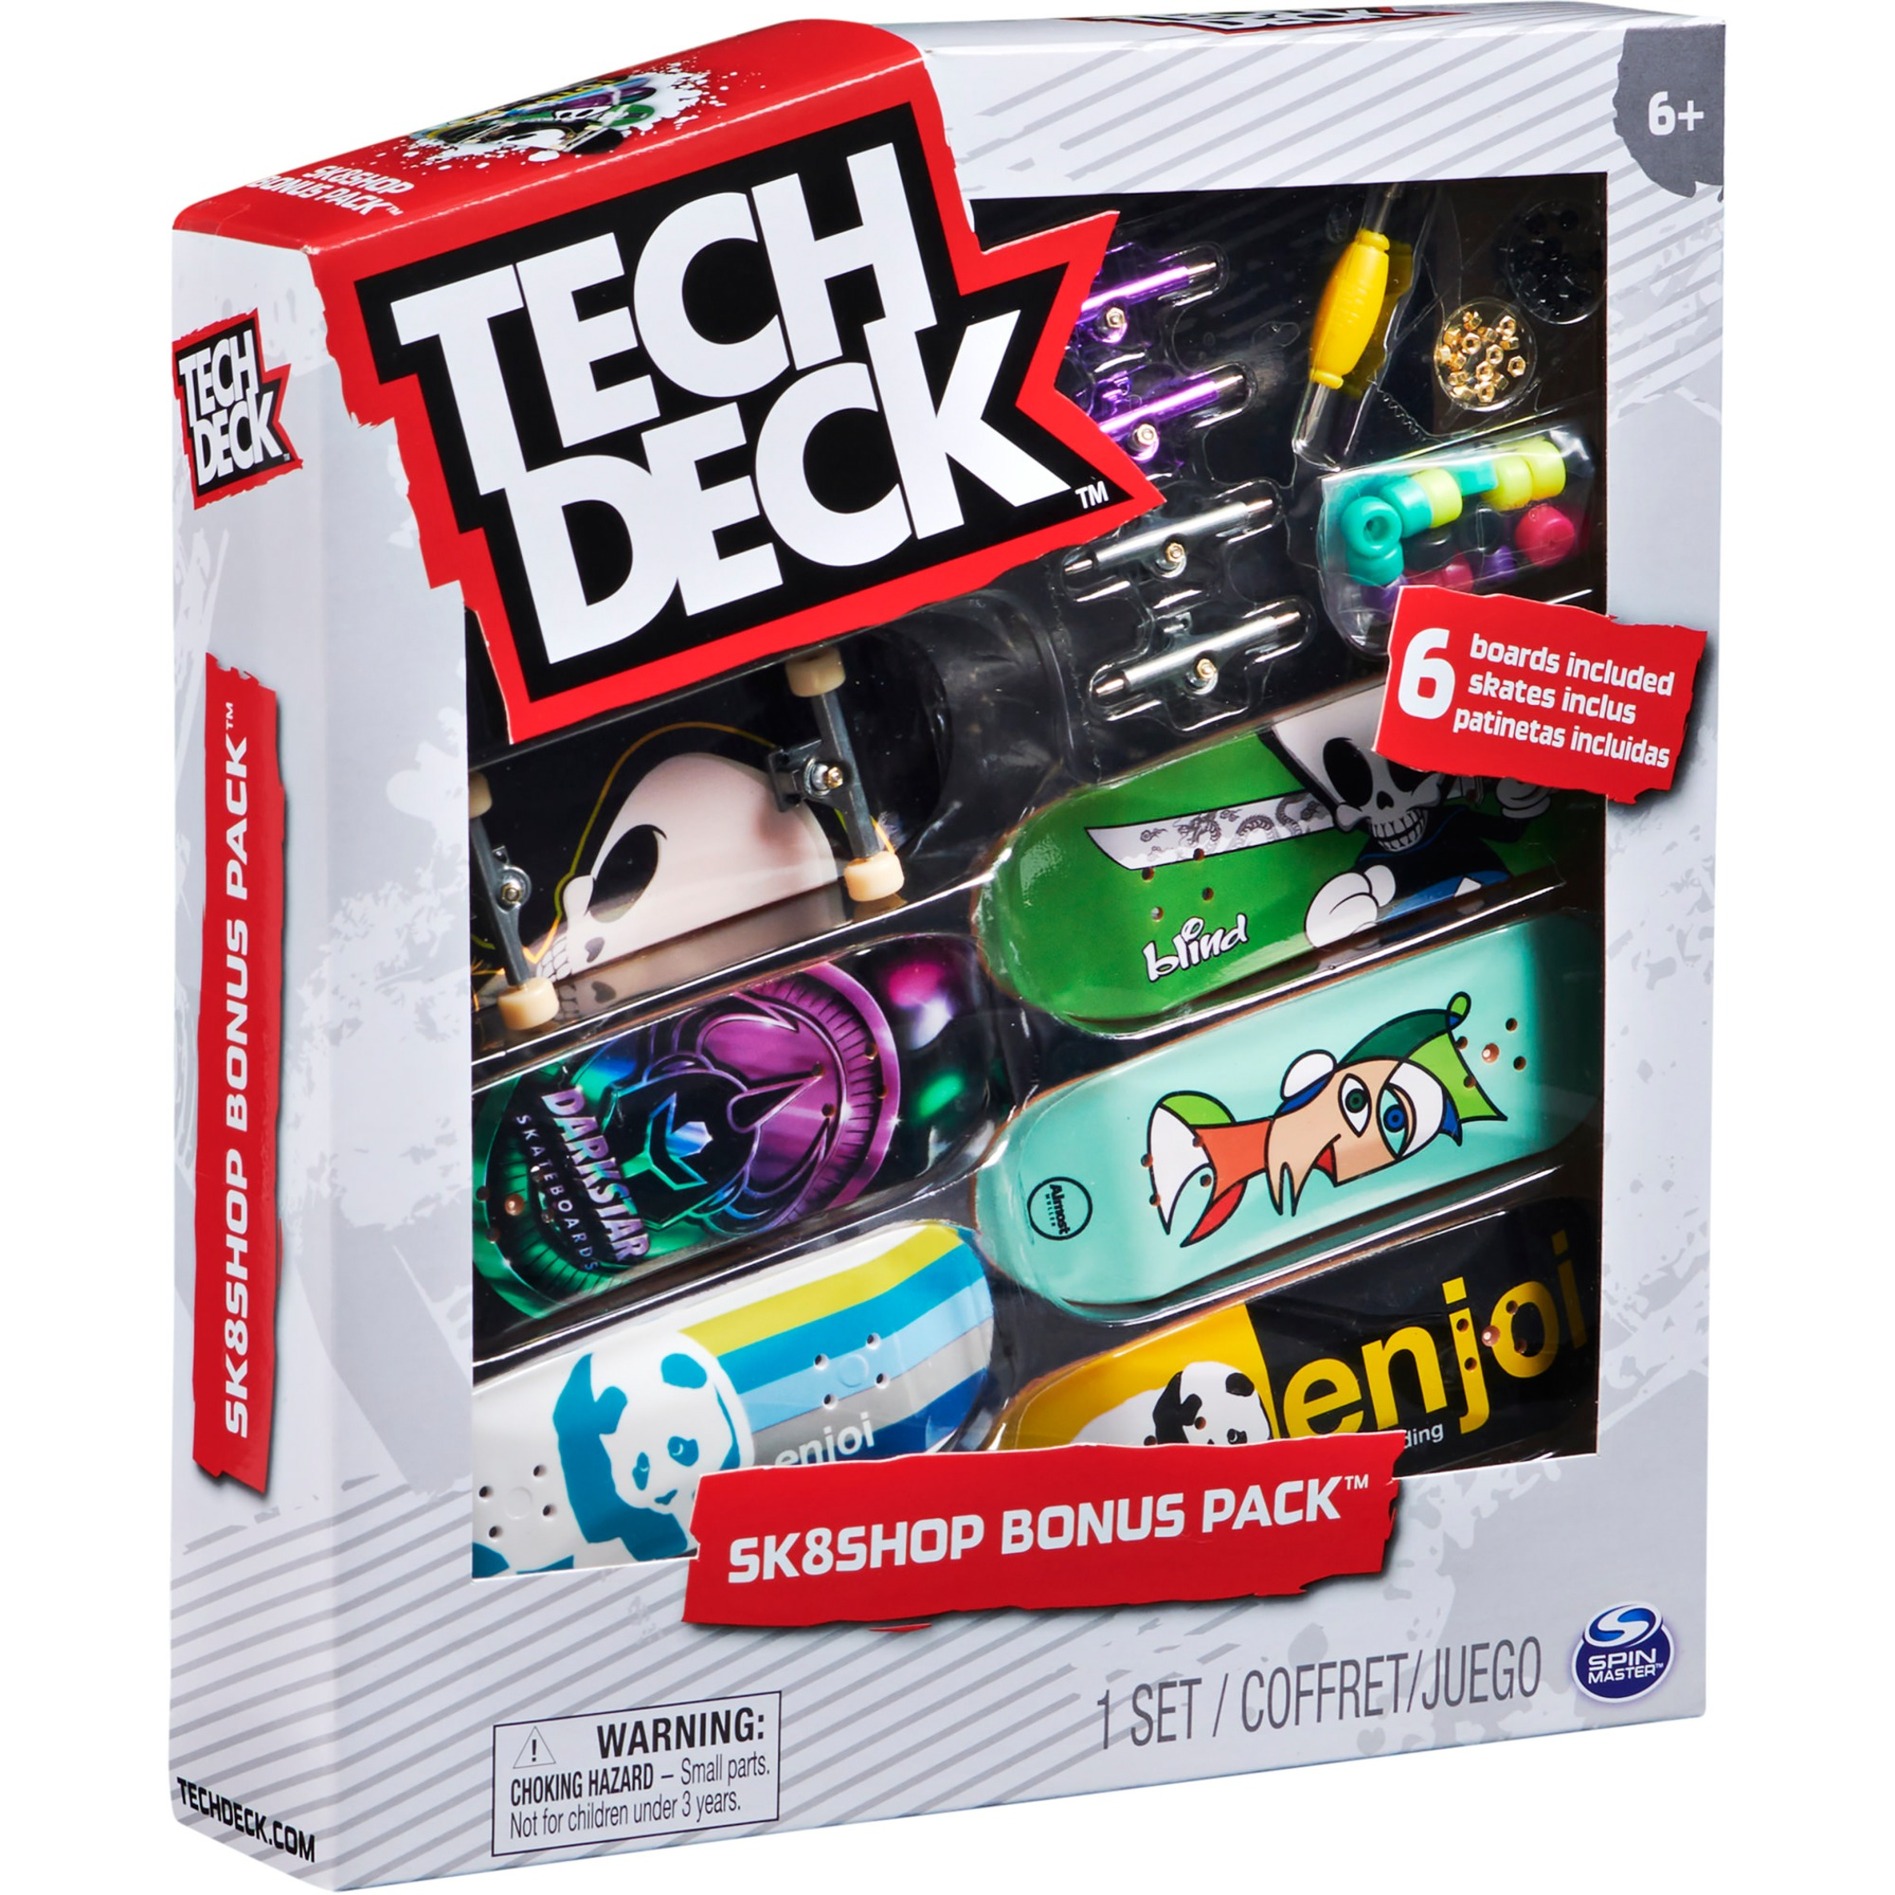 Image of Alternate - Tech Deck - Skate Shop Pack, Spielfahrzeug online einkaufen bei Alternate